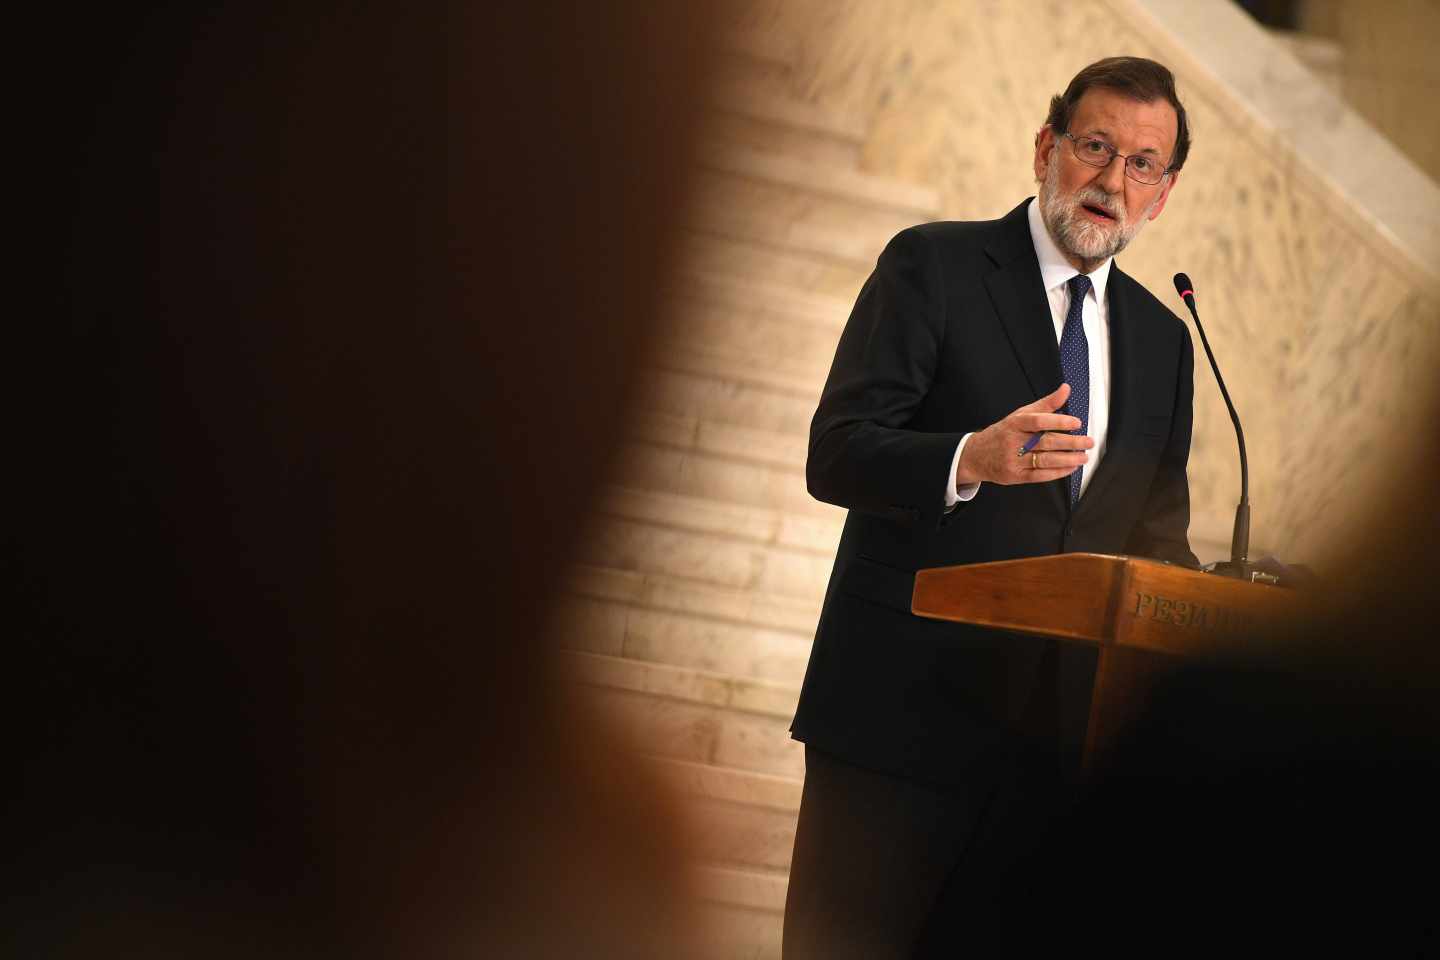 Rajoy levantará el 155 en Cataluña cuando el nuevo Govern tome posesión